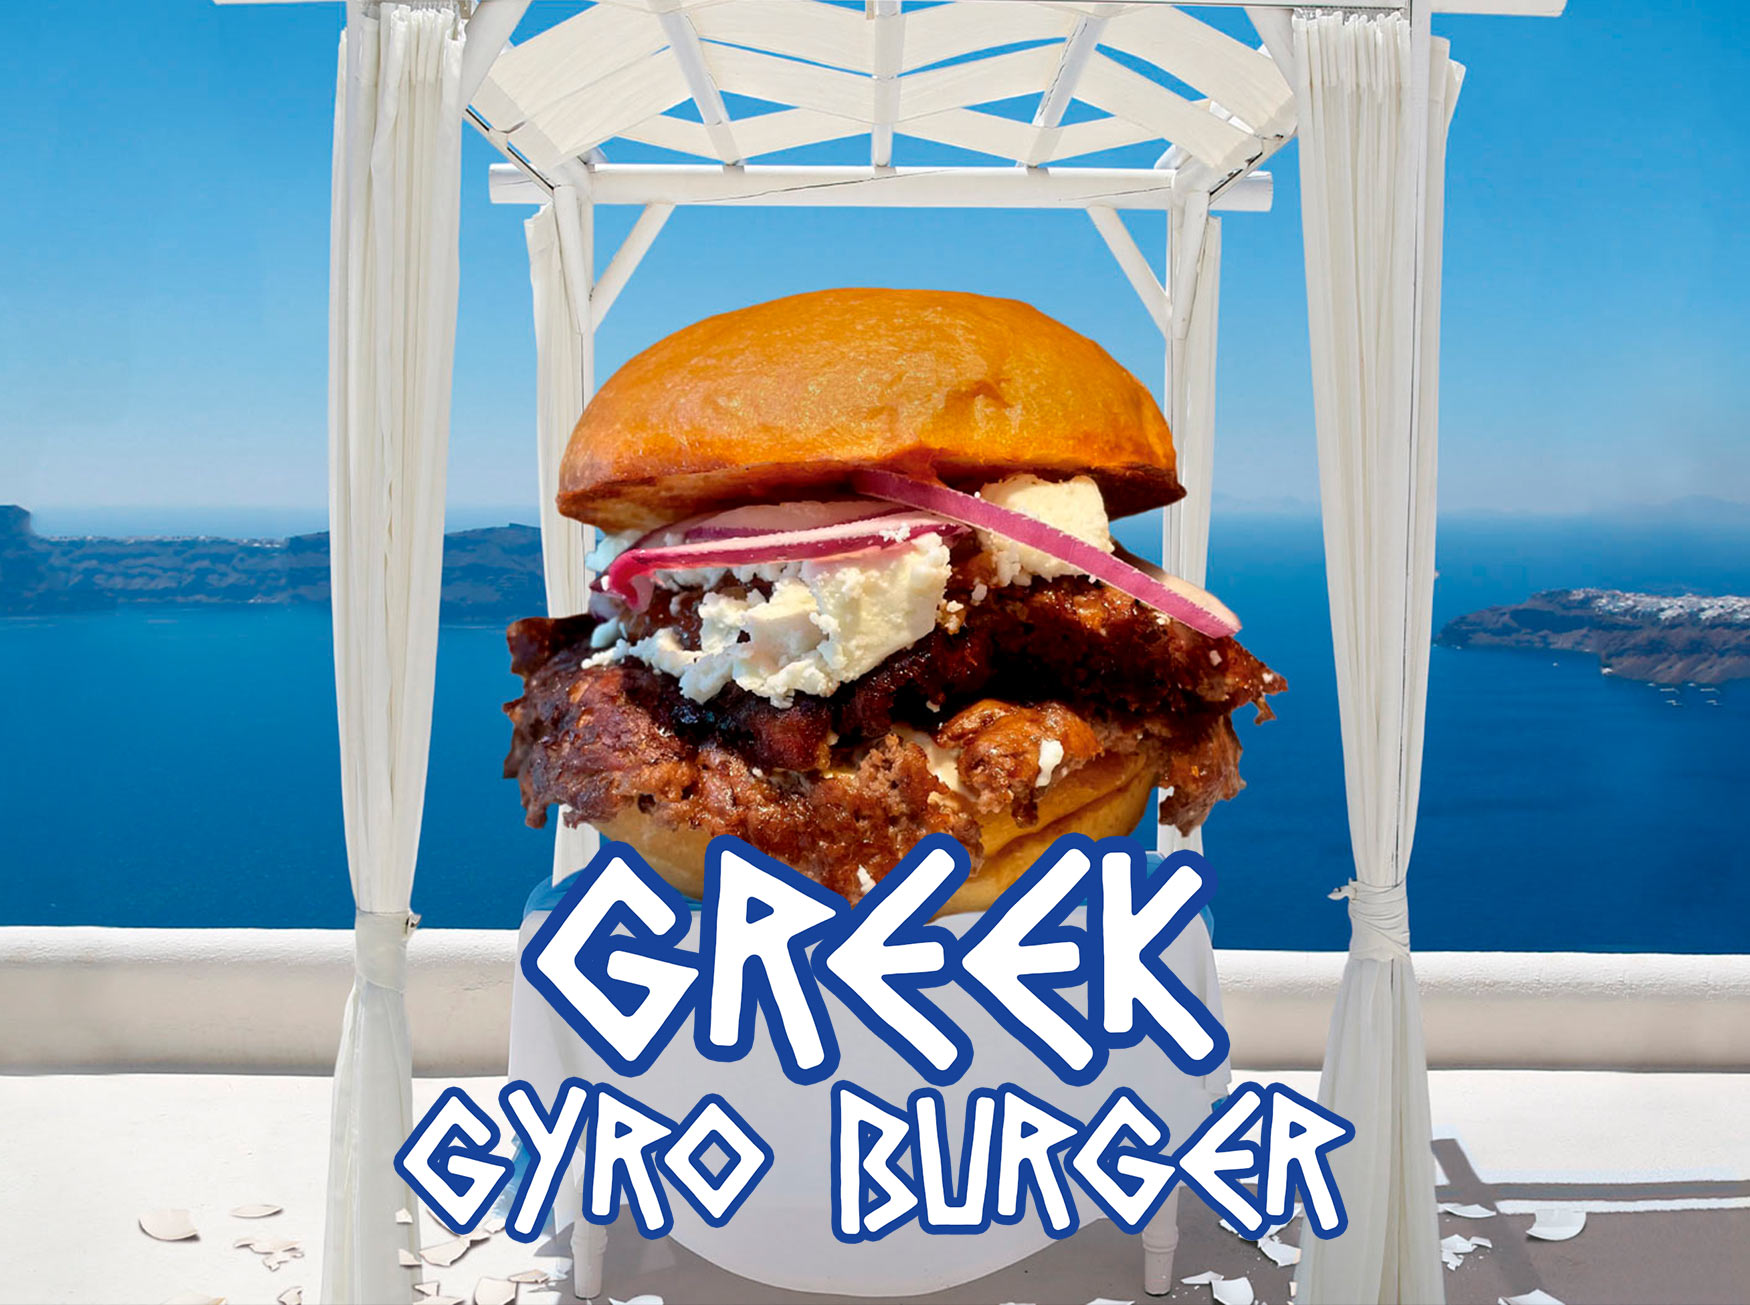 greek-gyro-burger-nueva-hamburguesa-de-butchers-smashed-burgers-en-pamplona-iruna-restaurante-en-el-centro-de-la-ciudad-hamburgueseria